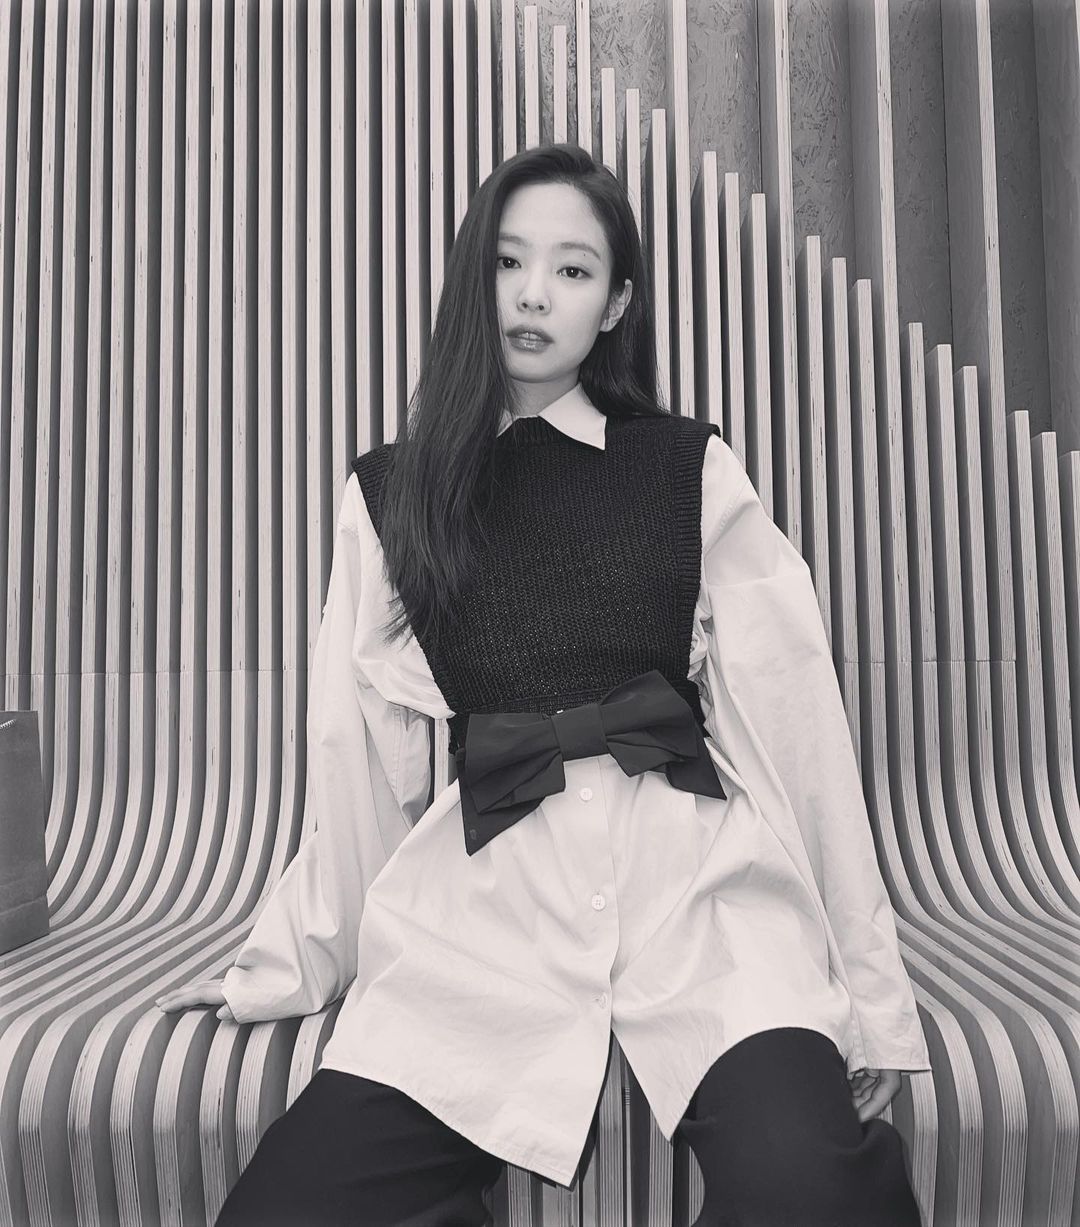 Jennie bị netizen Trung tấn công khi đăng ảnh trắng đen, bộ đồ ...